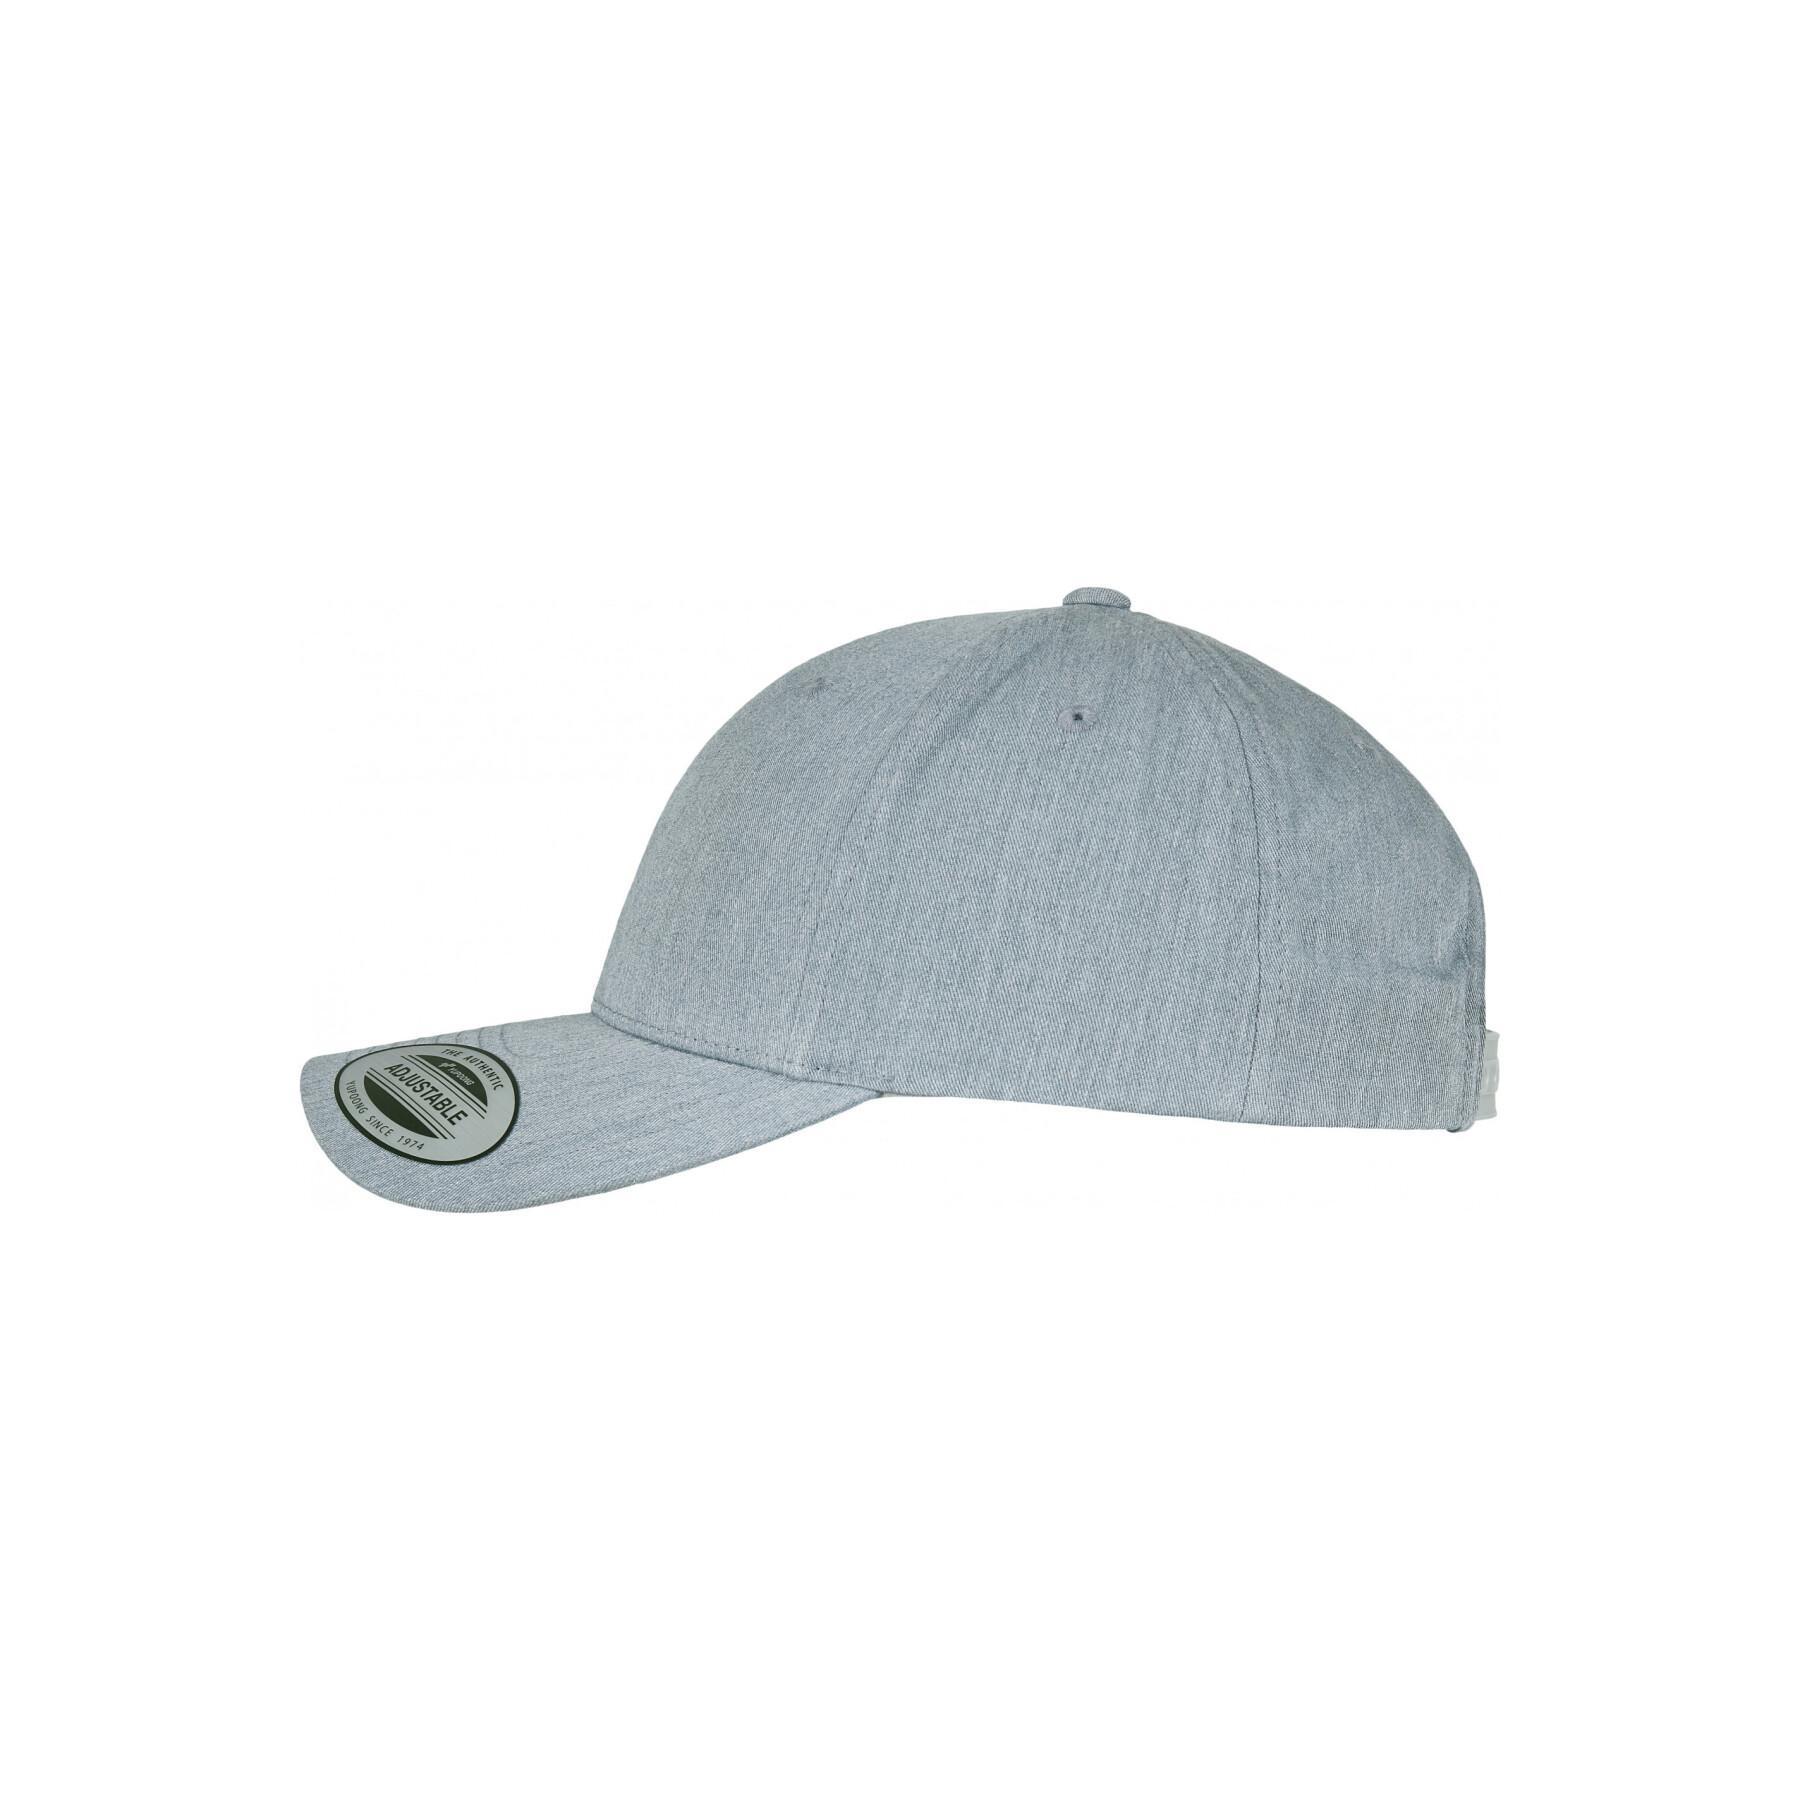 Classic curved cap Flexfit - Baseball - Accessories caps - Headwear